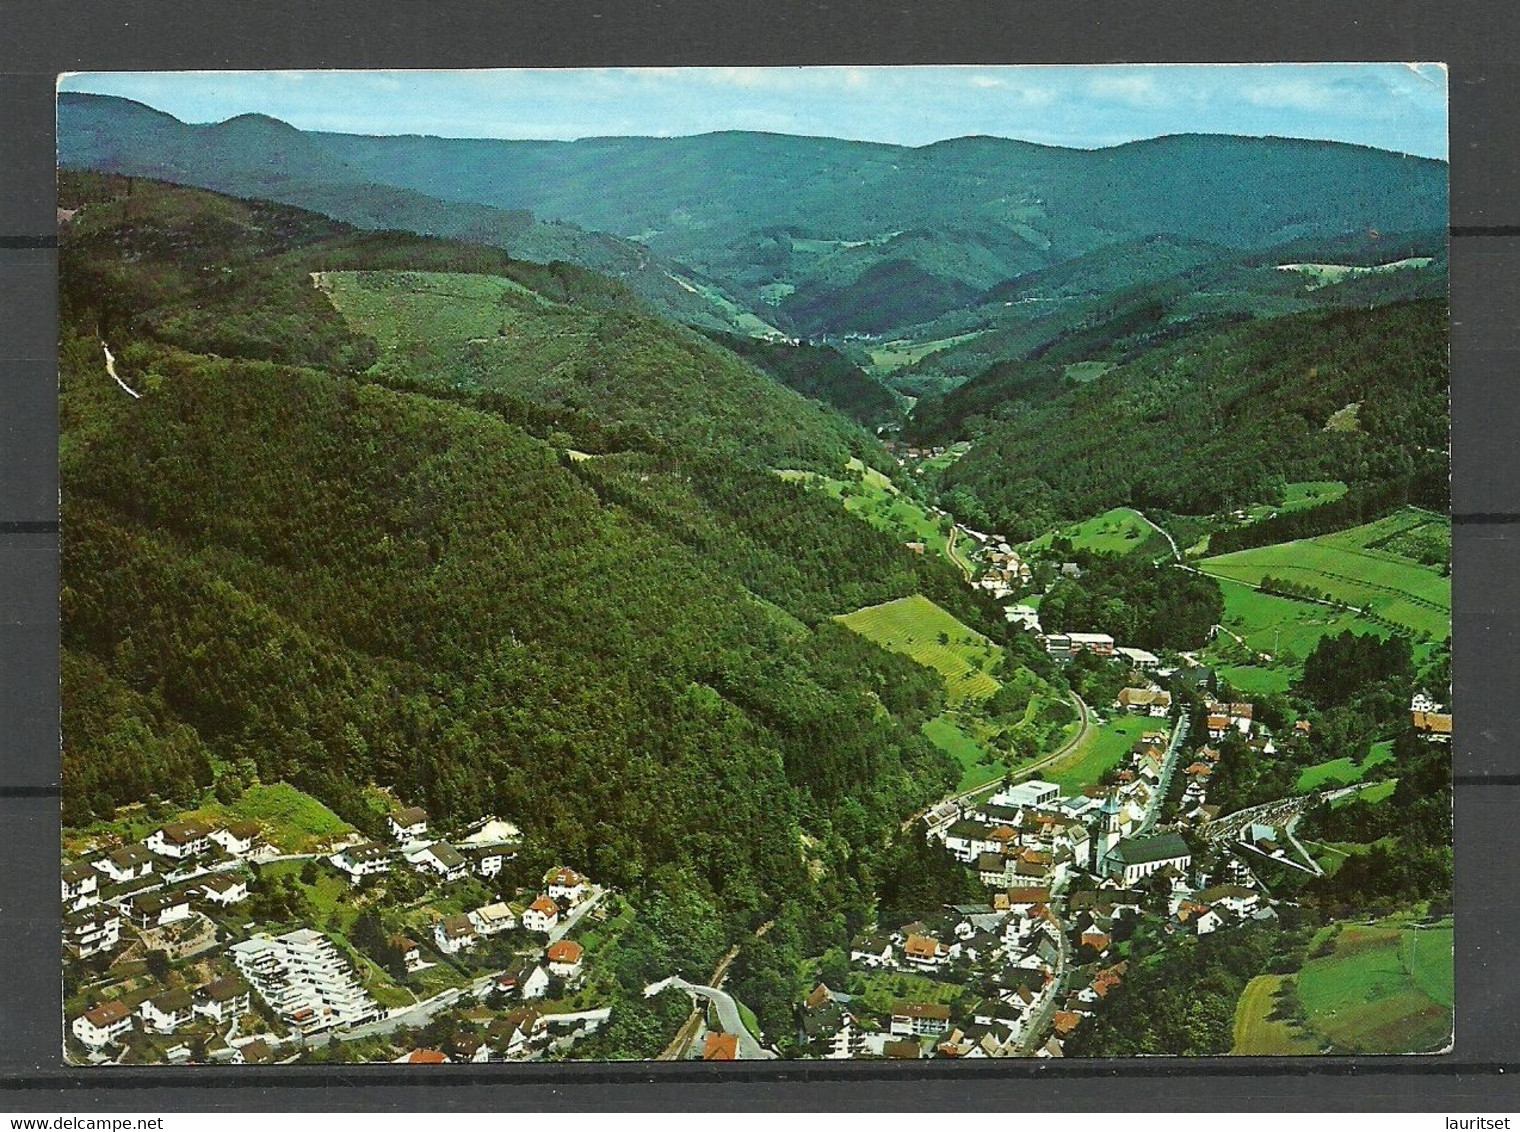 Deutschland BAD PETERSTAL Schwarzwald (gesendet 1991, Mit Briefmarke) - Bad Peterstal-Griesbach